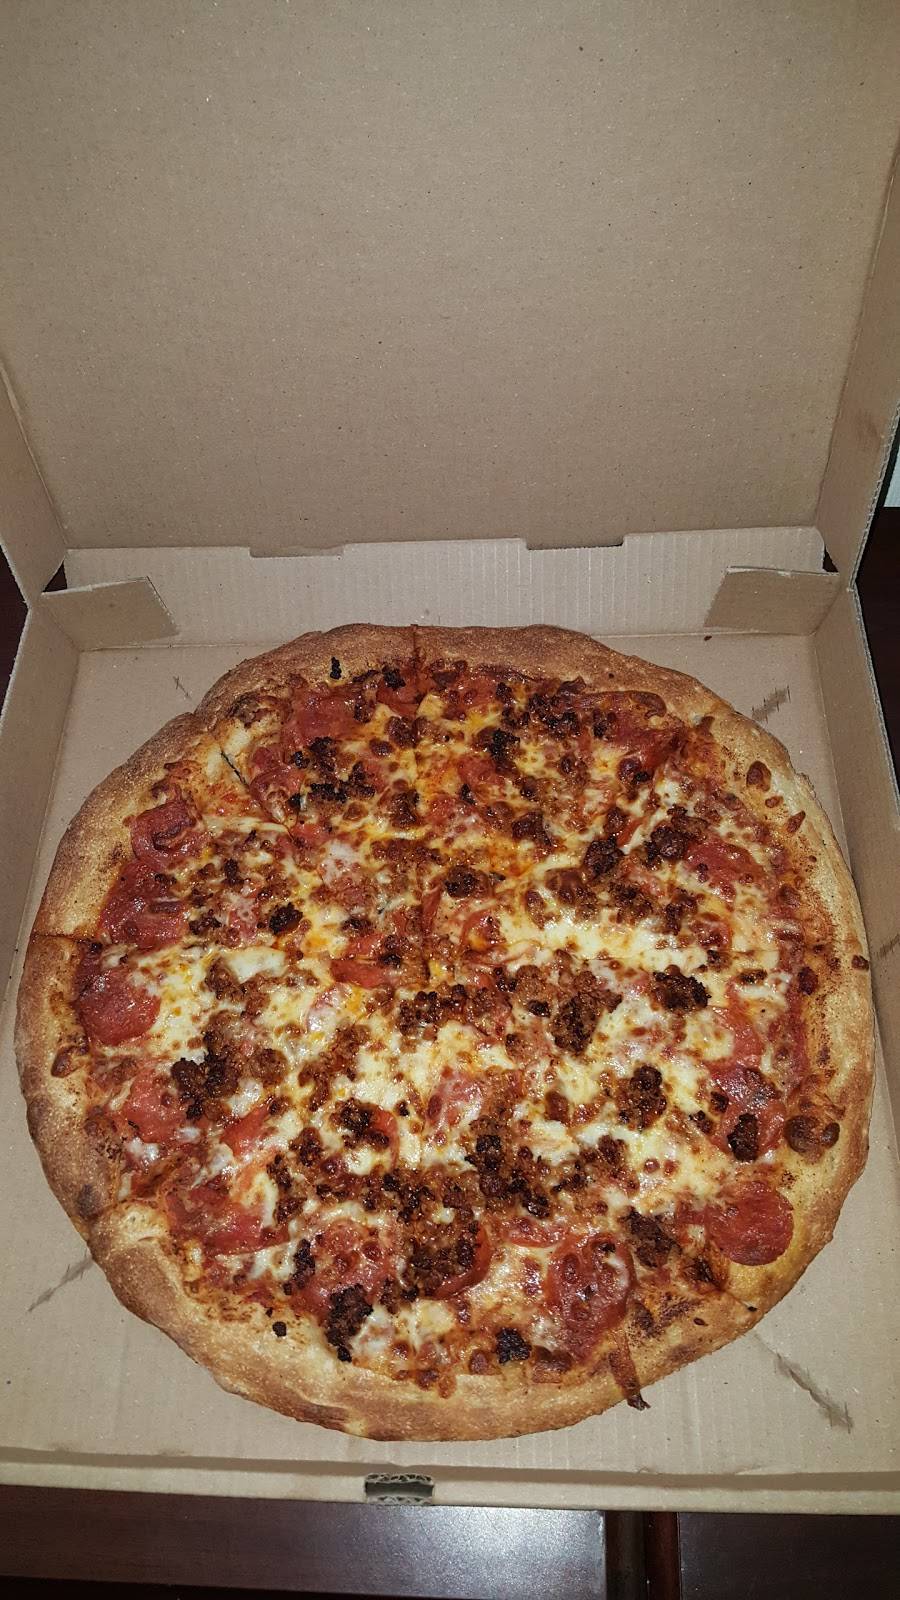 Marks Pizza | restaurant | 3017 Main St, Valatie, NY 12184, USA | 5187587333 OR +1 518-758-7333